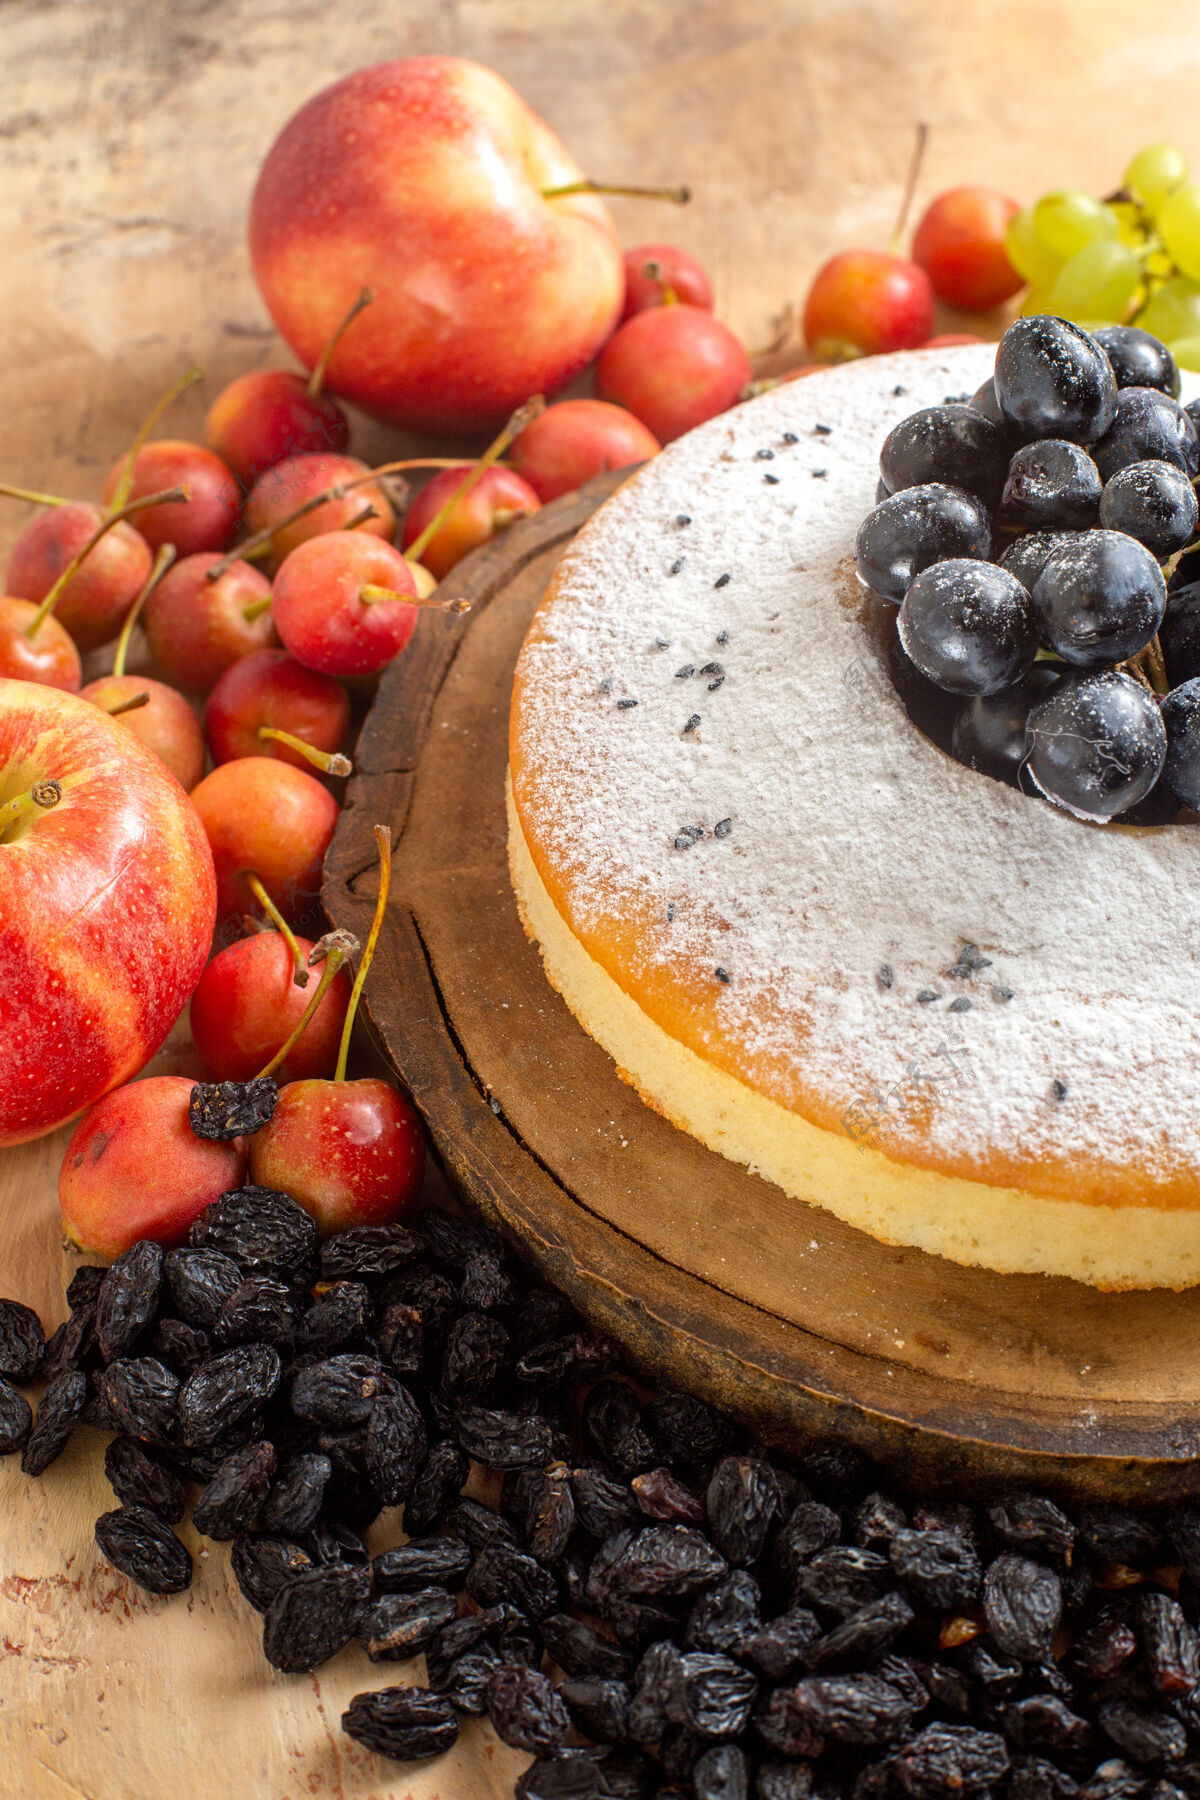 甜点侧面特写一个蛋糕一个开胃蛋糕板葡萄干樱桃苹果蓝莓蛋糕浆果